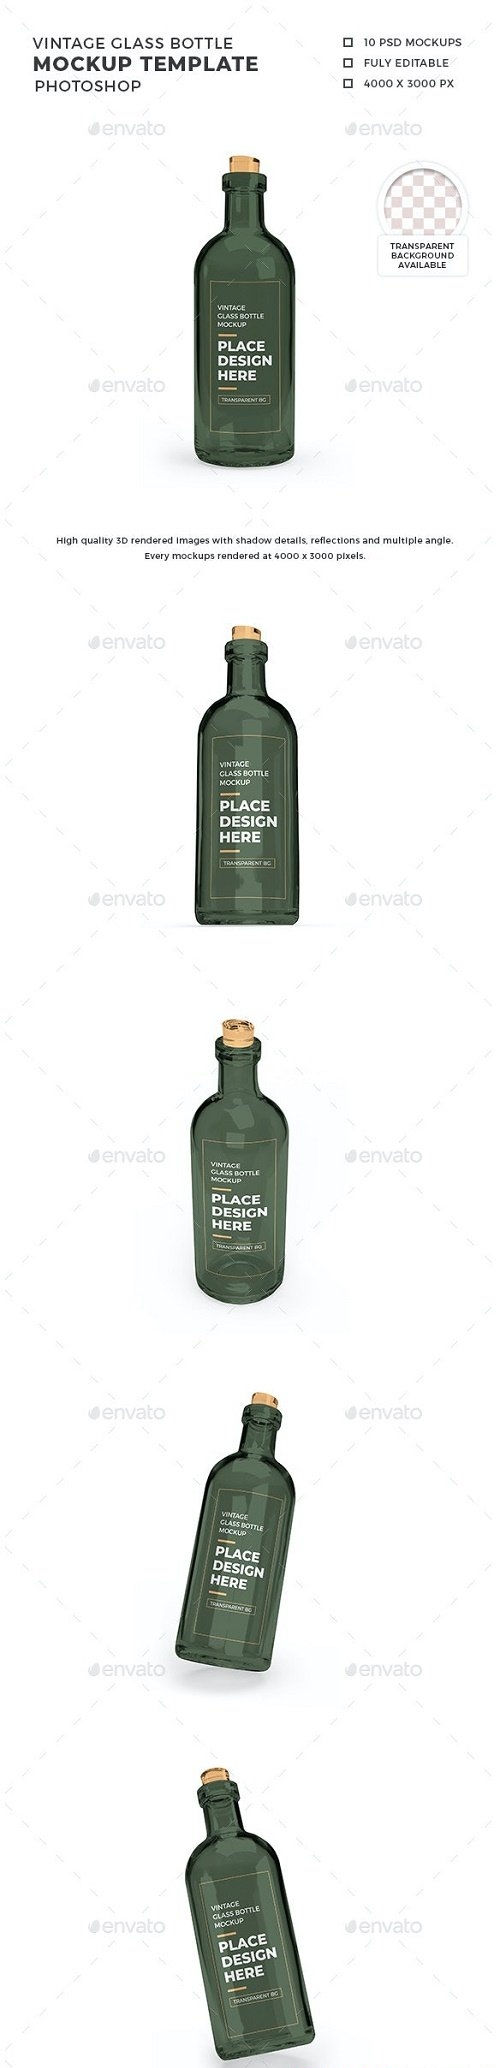 Vintage Glass Bottle 3D Mockup Template - 30873775